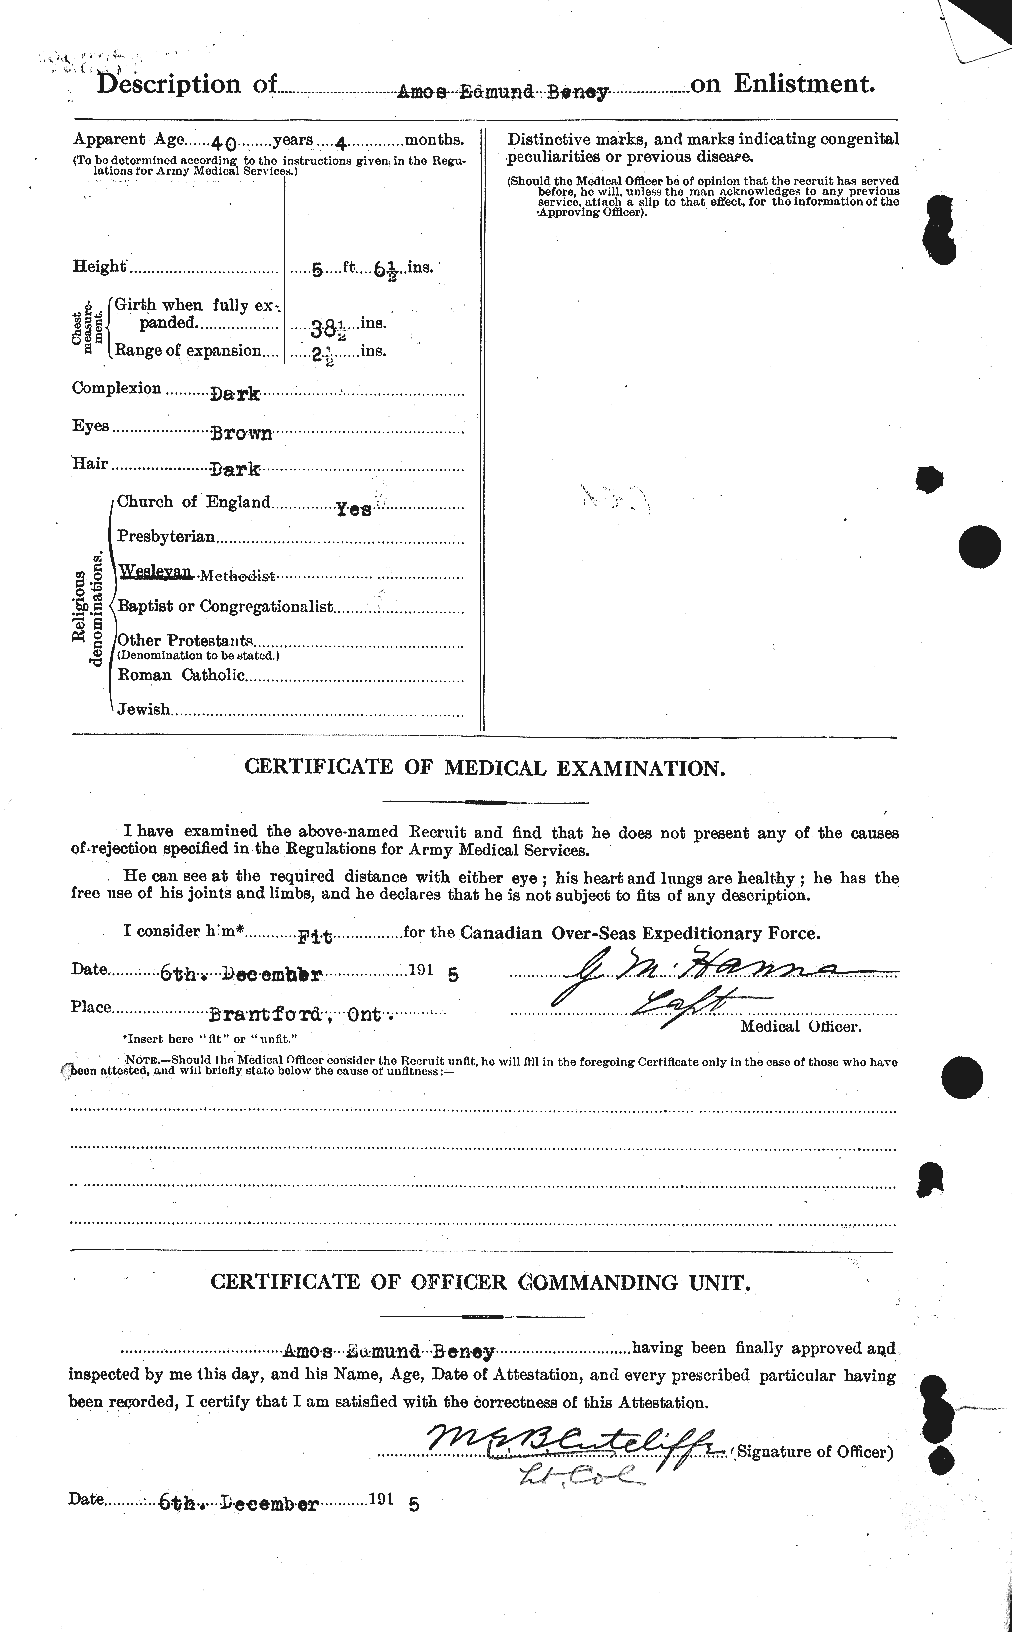 Dossiers du Personnel de la Première Guerre mondiale - CEC 235777b